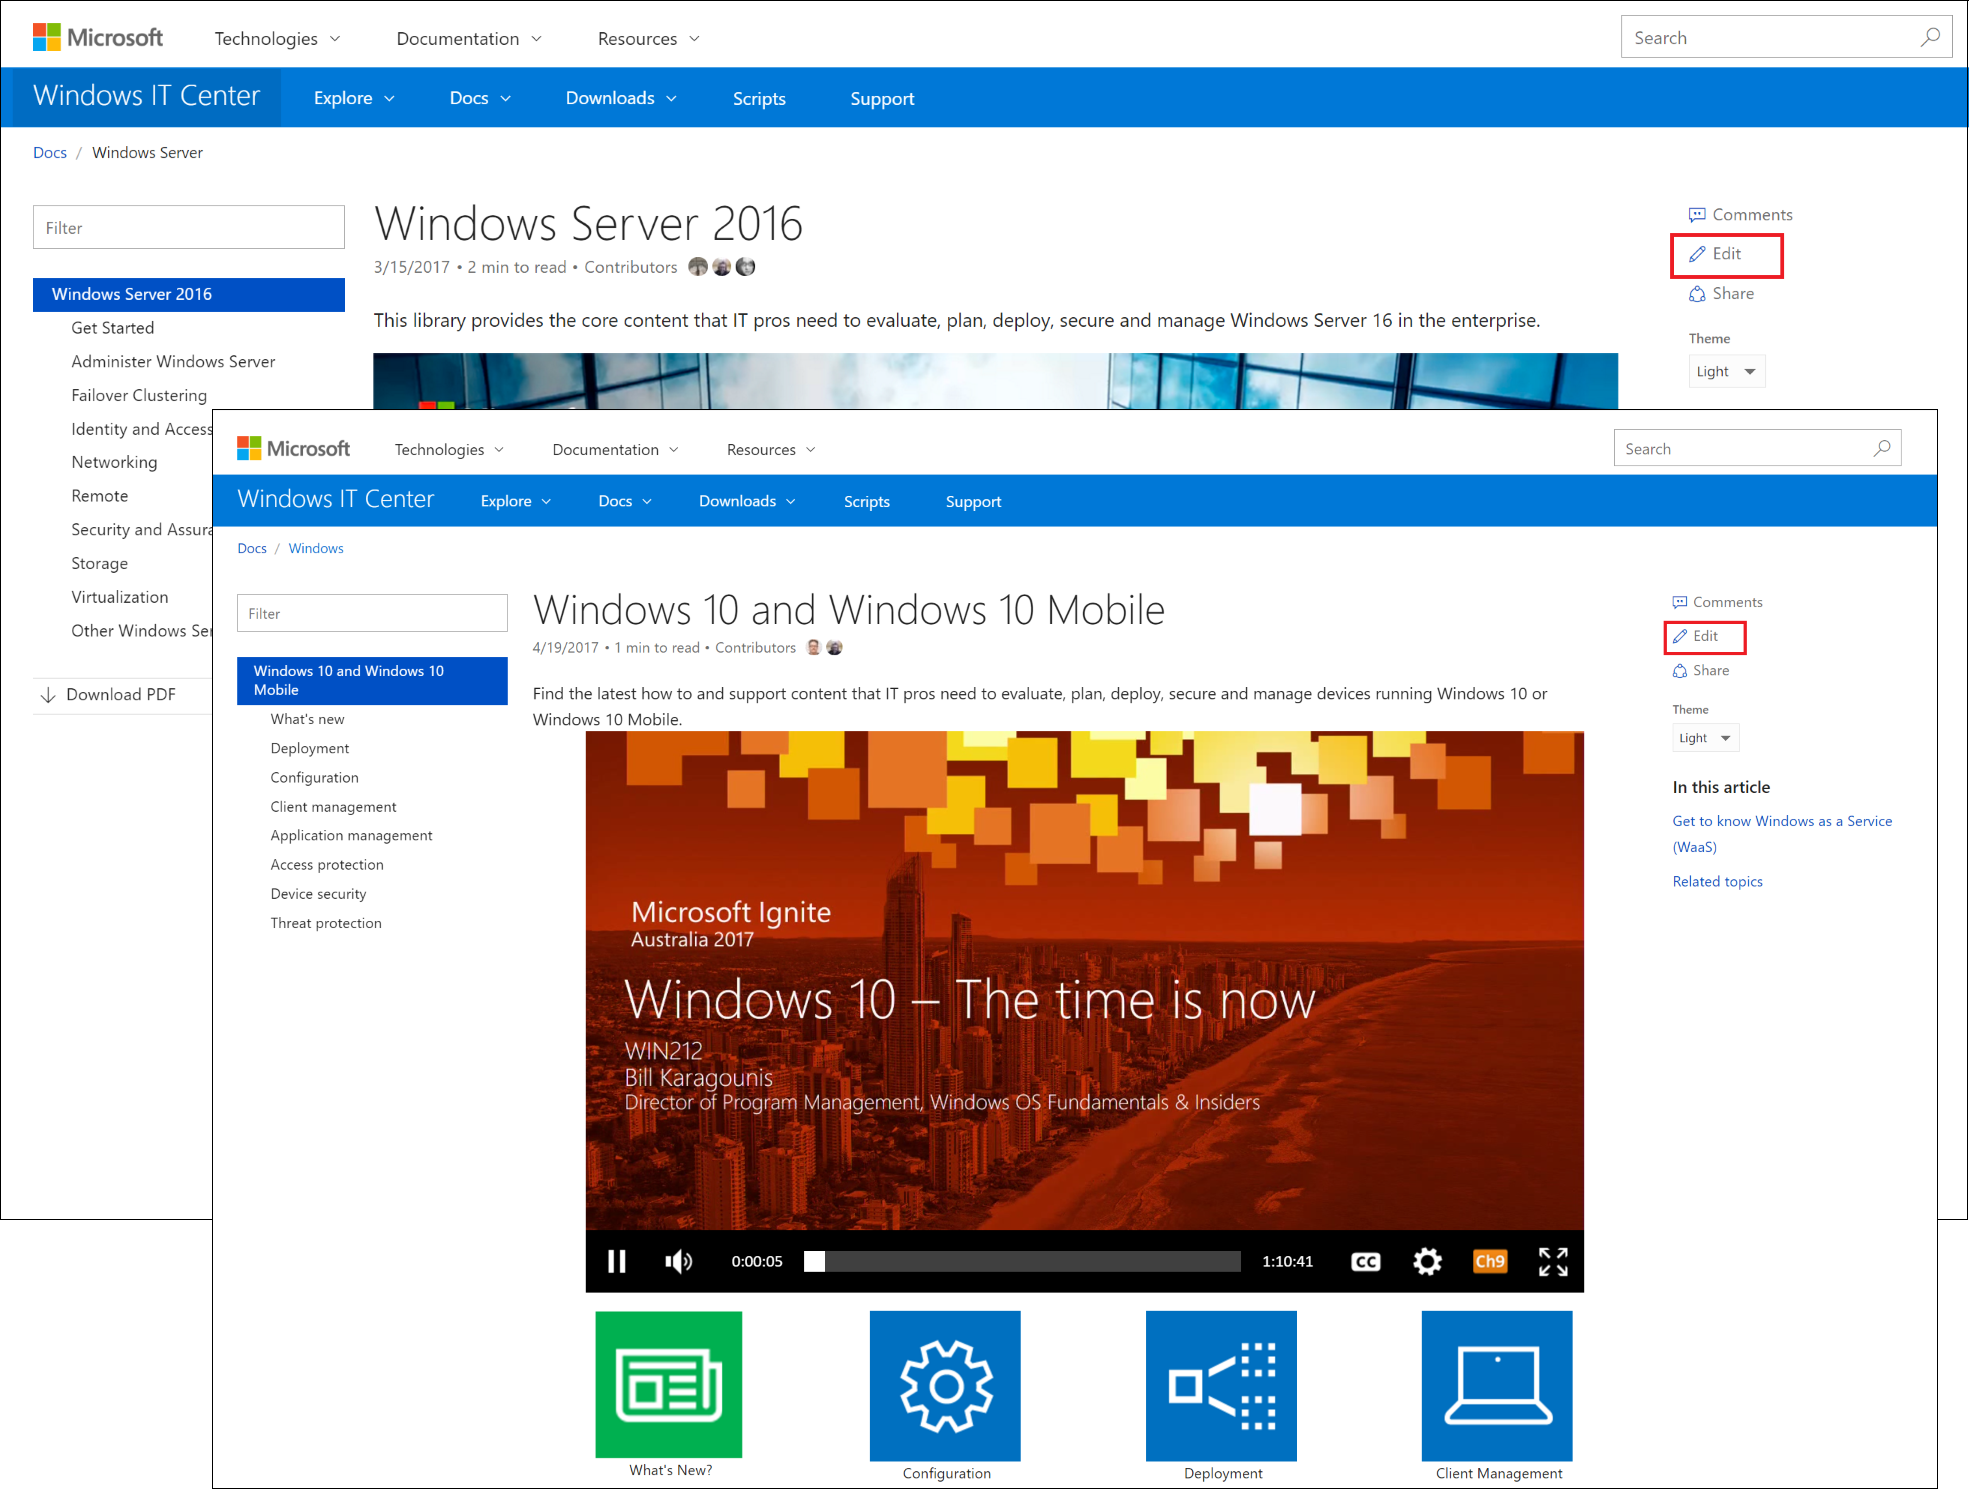 docs.microsoft.com 上的 Windows 10 和 Windows 10 移动版和 Windows Server 2016 登陆页面